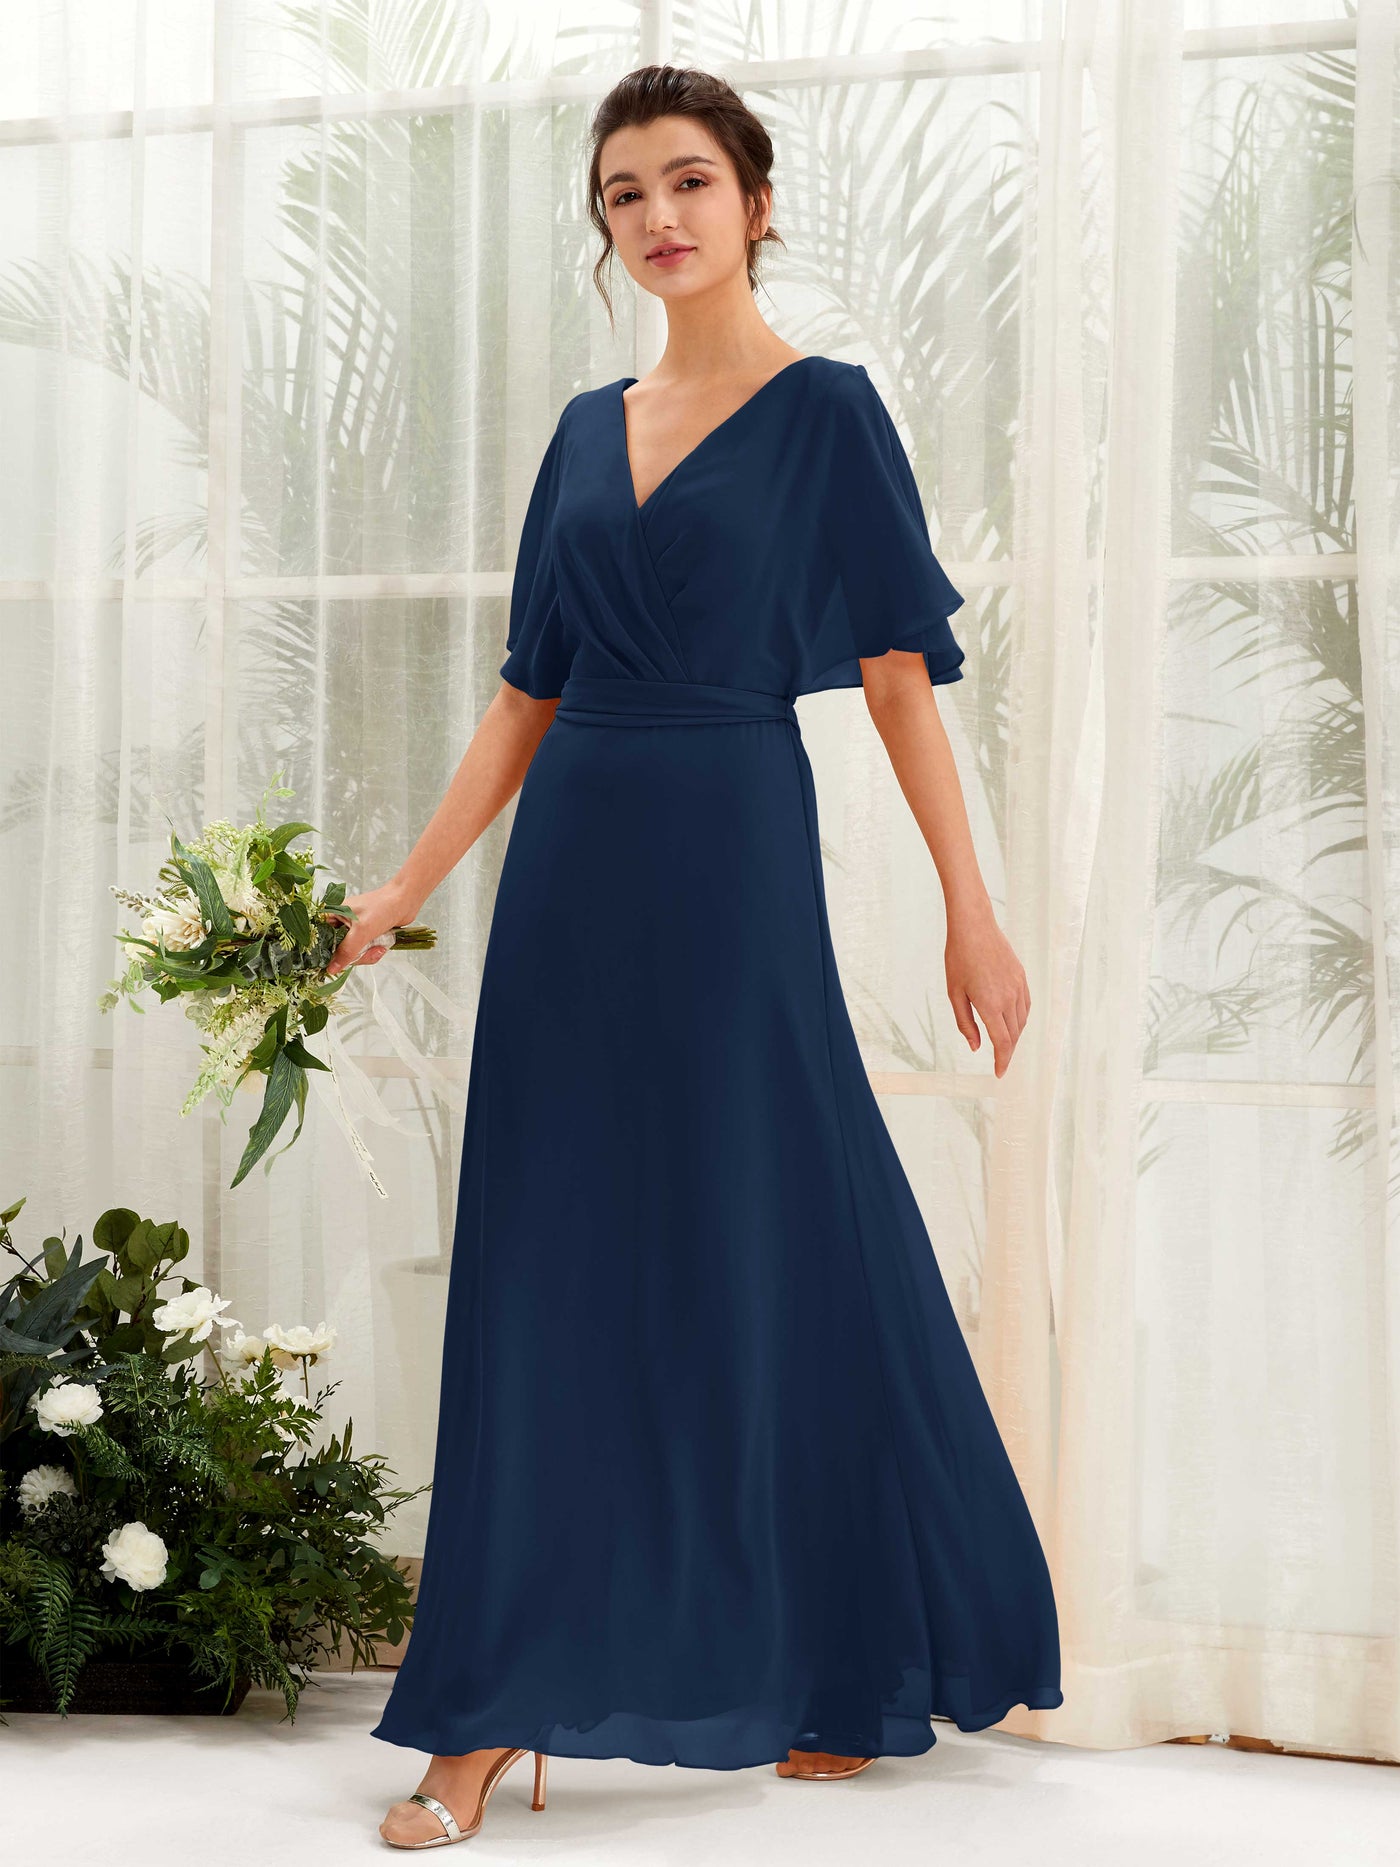 V-neck Short Sleeves Chiffon Bridesmaid Dress (81222413)#color_navy